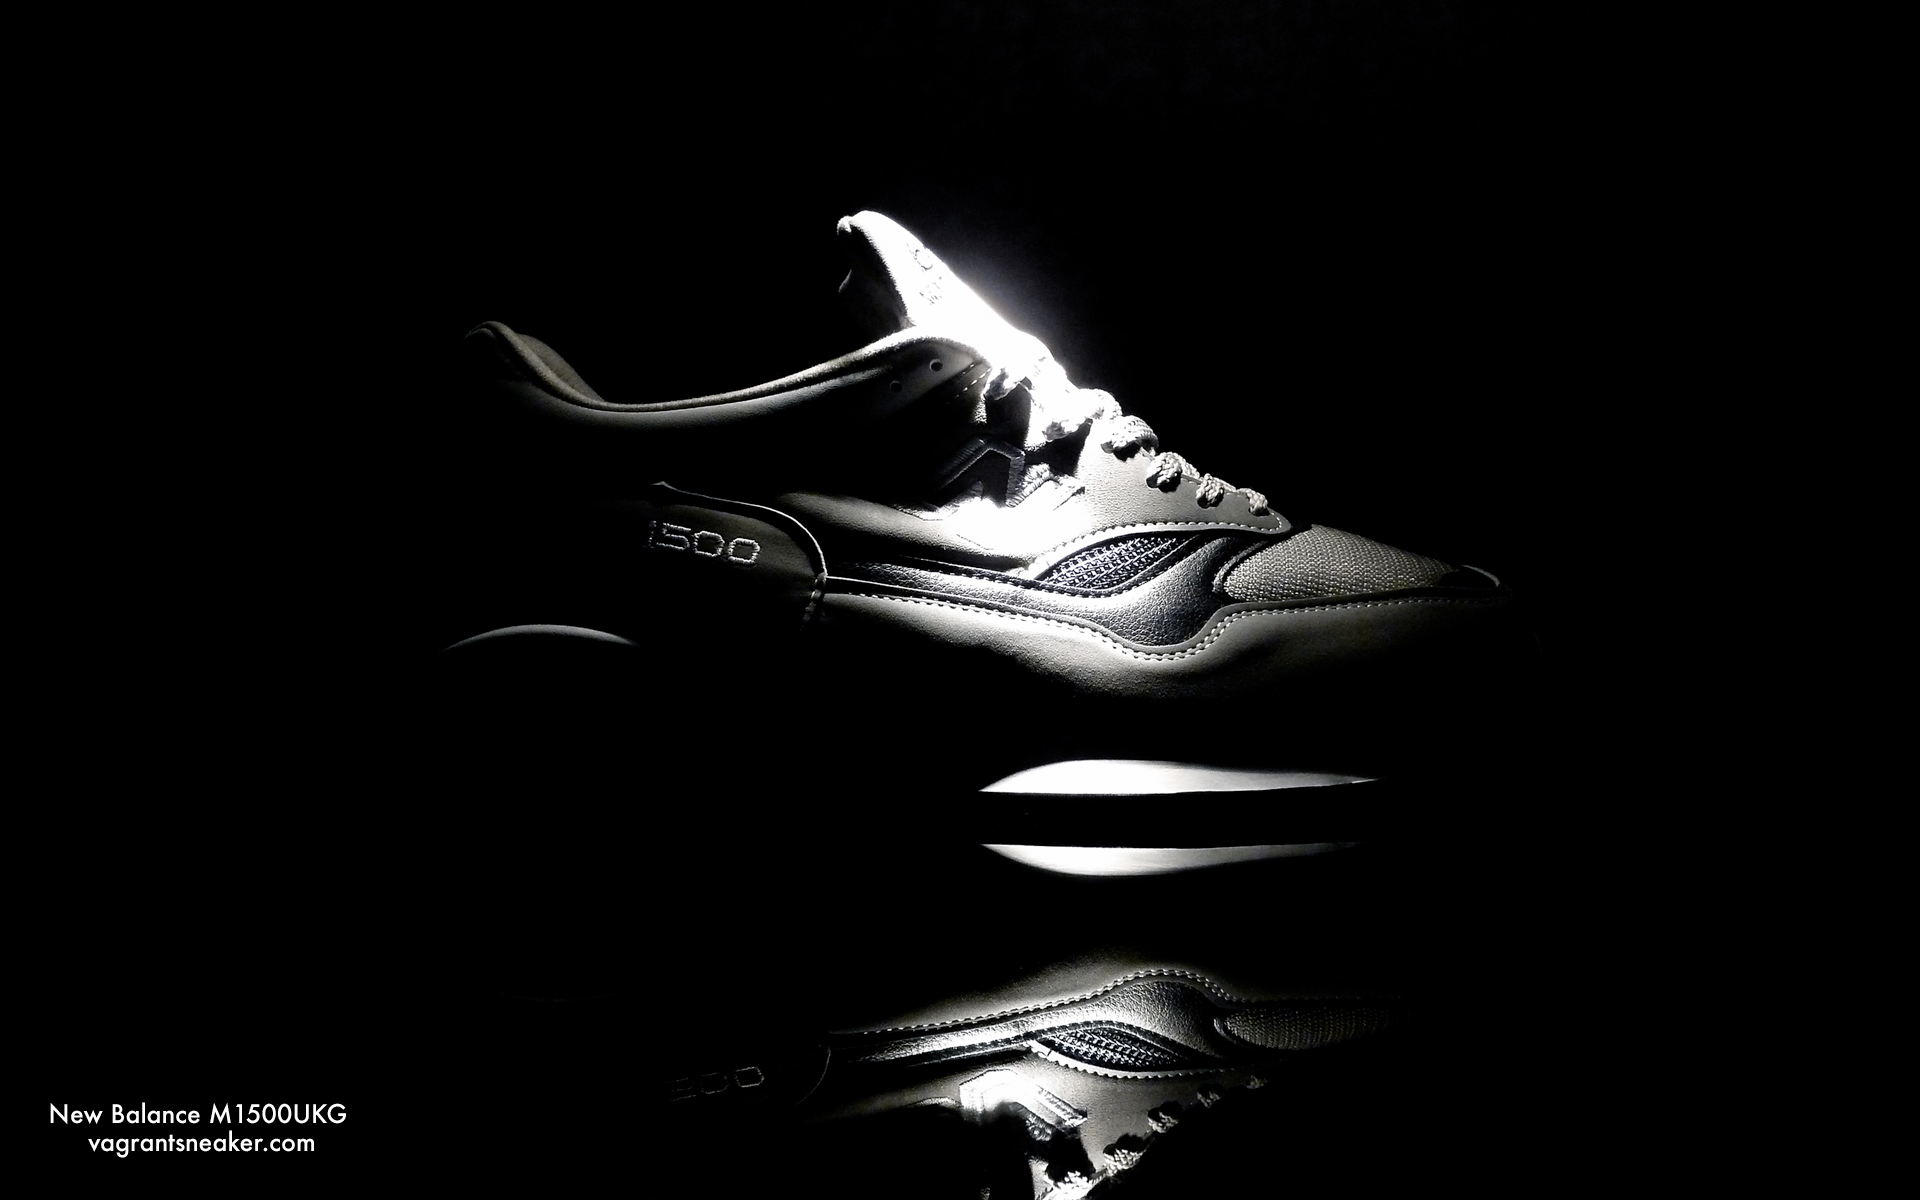 Wallpaper New Balance M1500ukg Og Retro 2010 Wp 01 Vagrant Sneaker